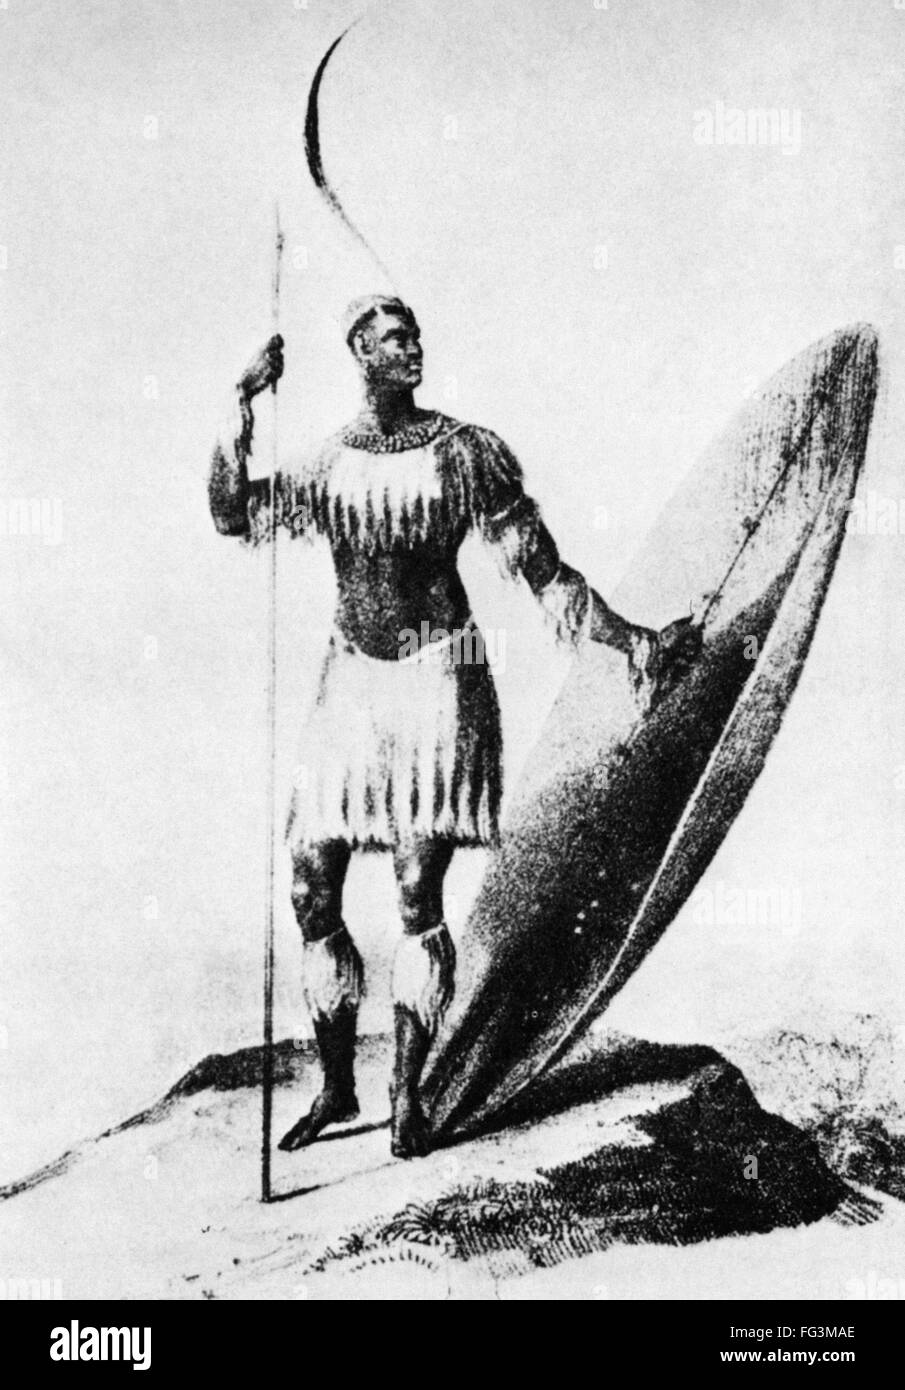 SHAKA ZULU (c1787-1828). /NChief du clan zoulou et fondateur de l'Empire  Zoulou en Afrique du Sud. Dessin, 1824, par James Saunders King Photo Stock  - Alamy